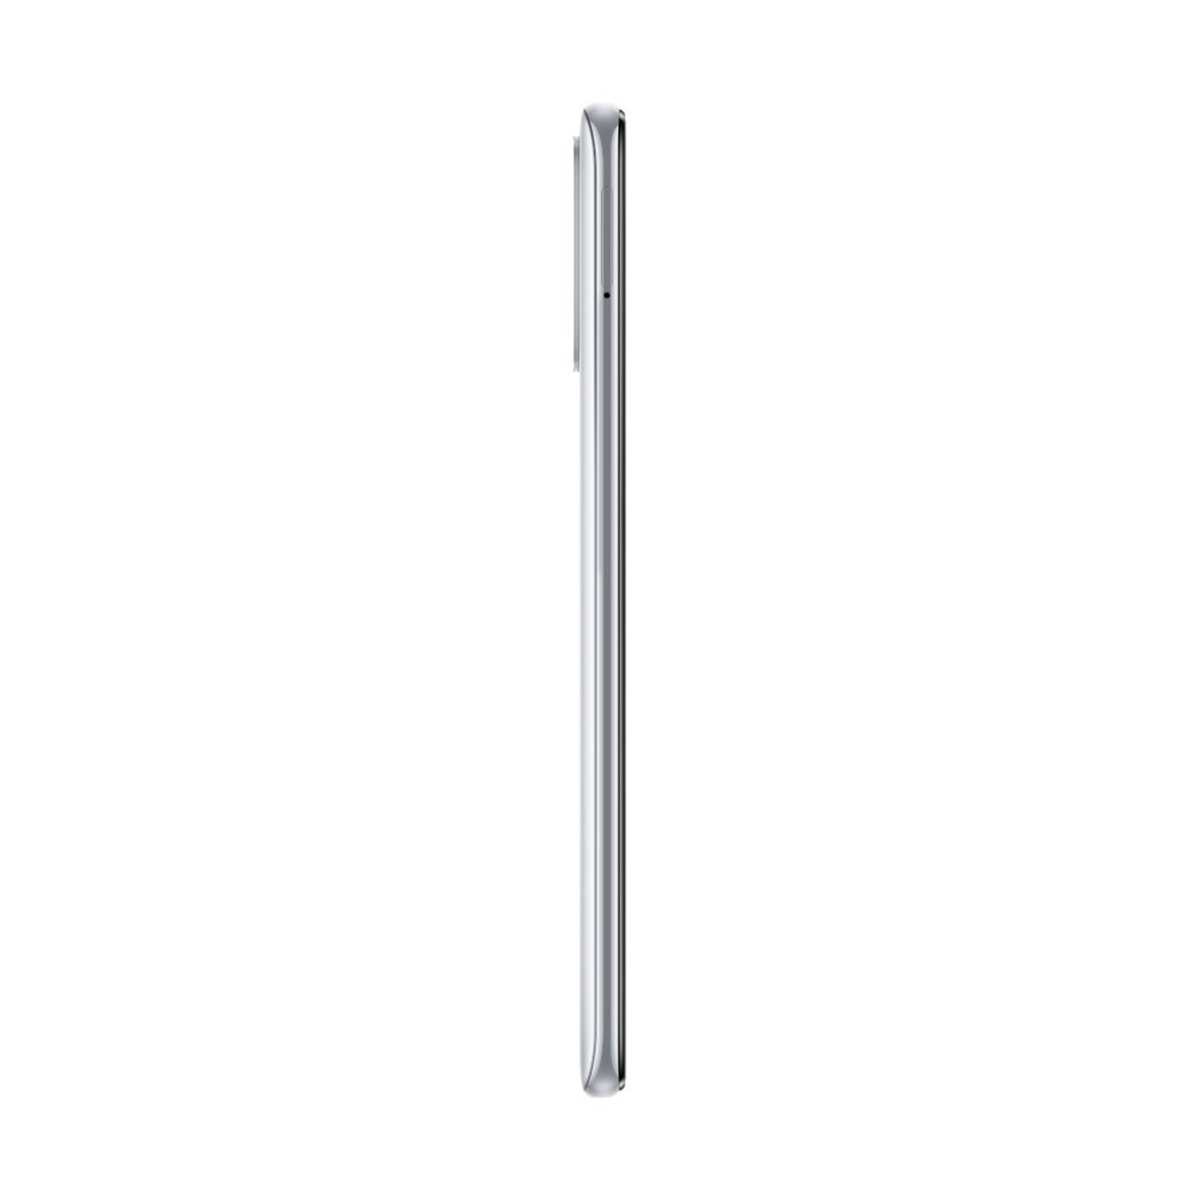 Xiaomi Redmi Note 10 64GB Pebble White